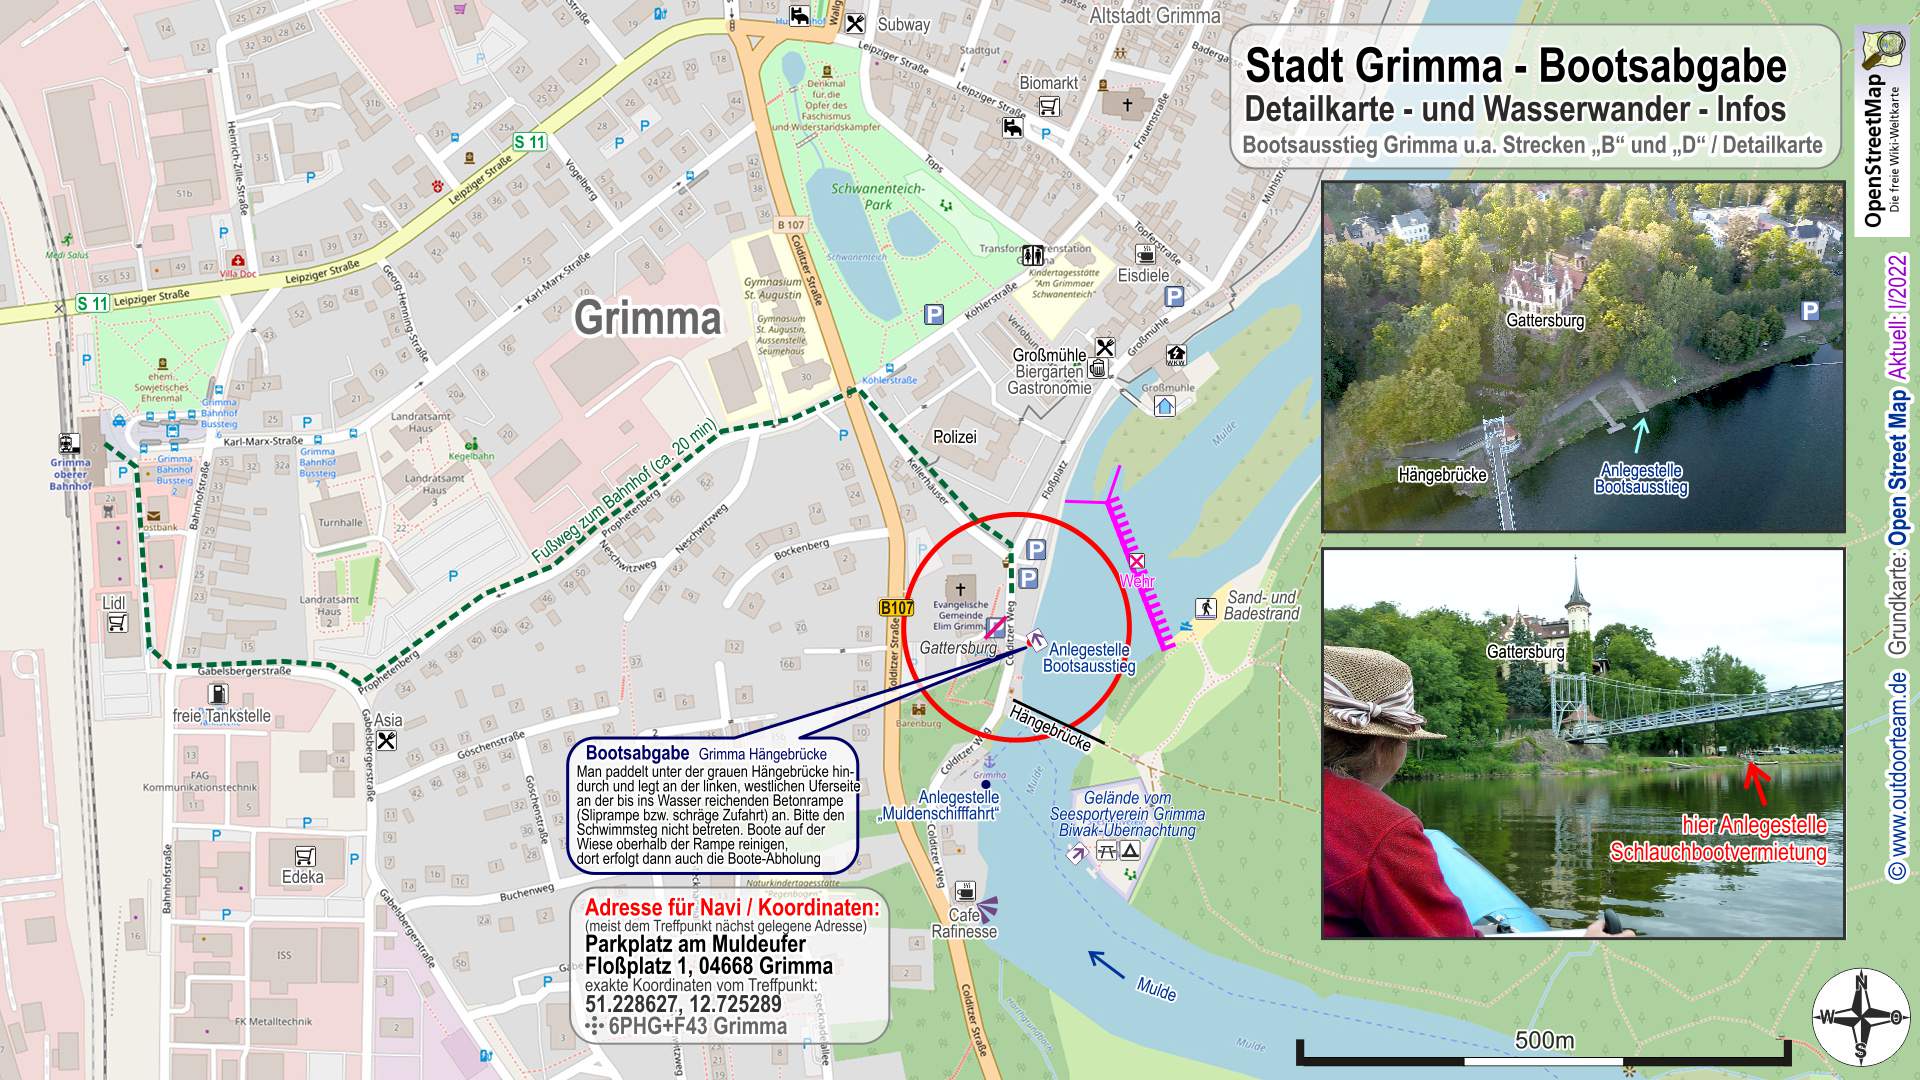 Detailkarte und Wasserwander-Info Bootsausstieg Grimma nahe Stadtwehr bzw. Hängebrücke am Mulde - Fluss